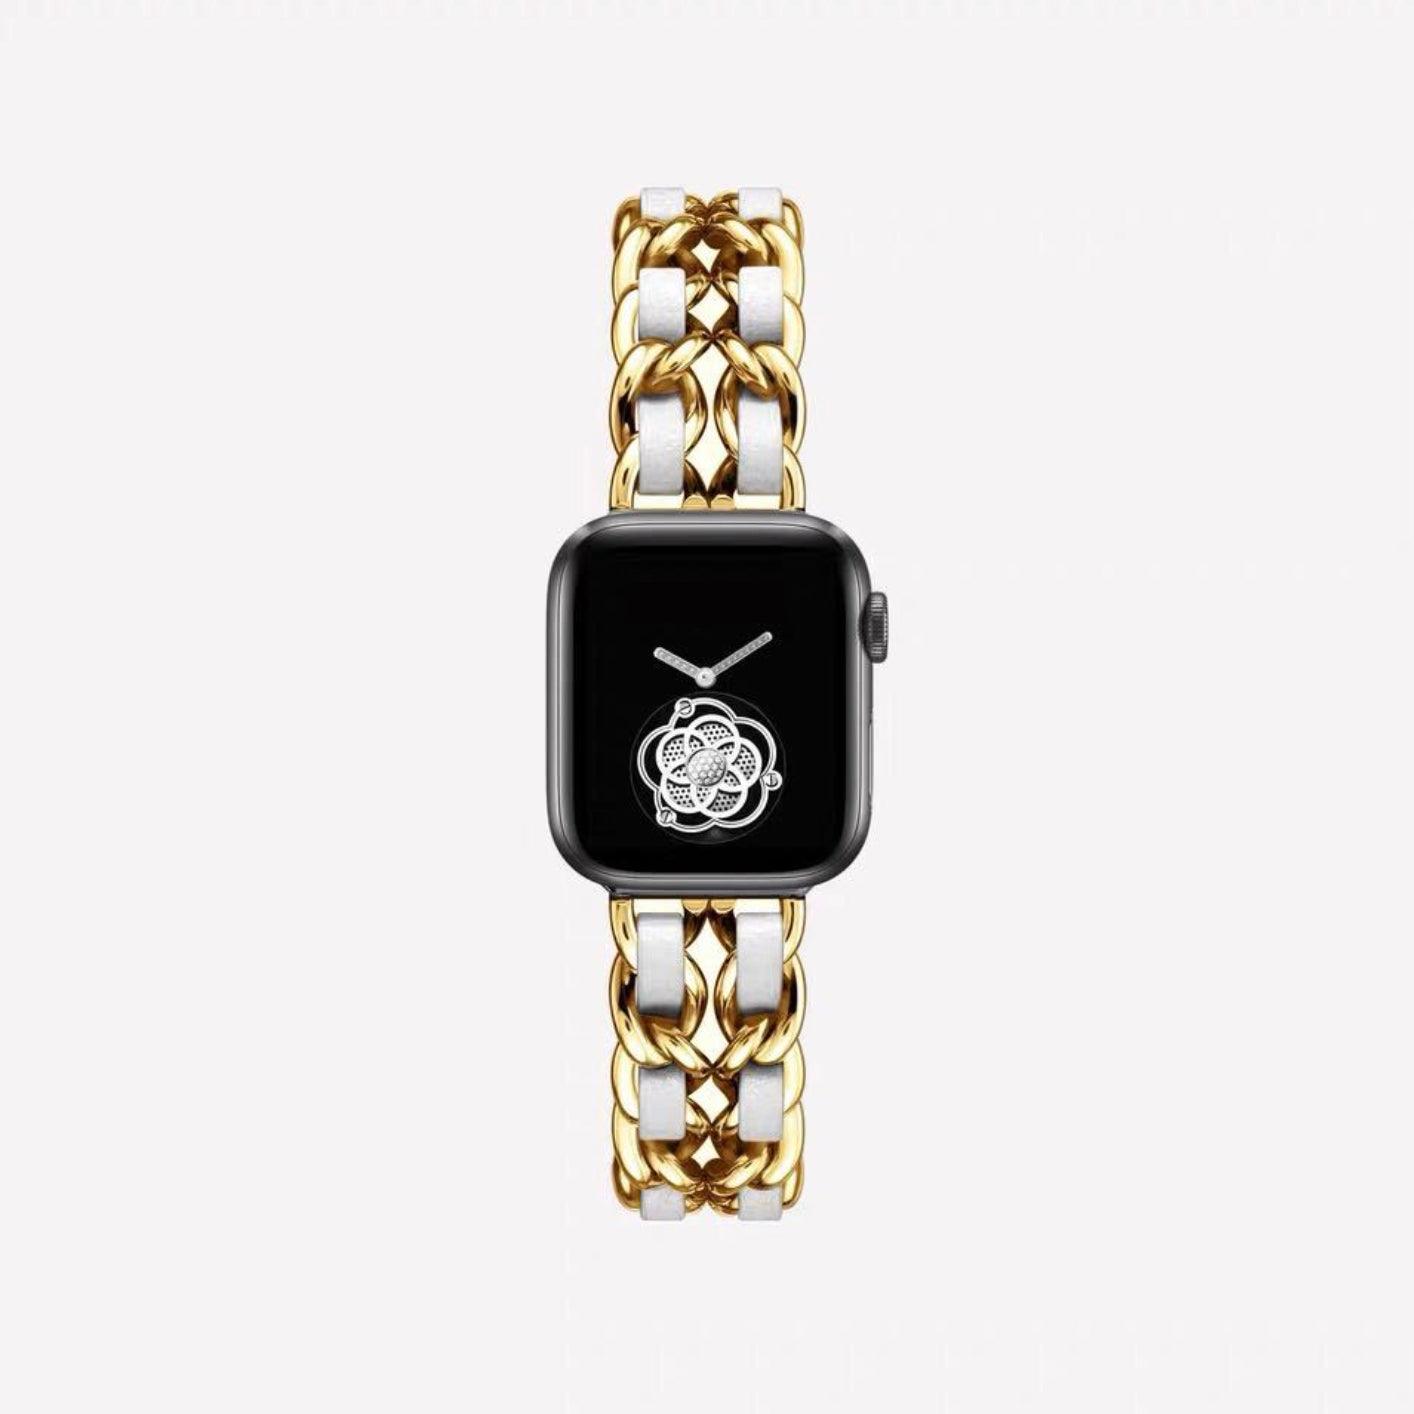 Apple Watch チェーンバンド ゴールド レザーブラック 40mm